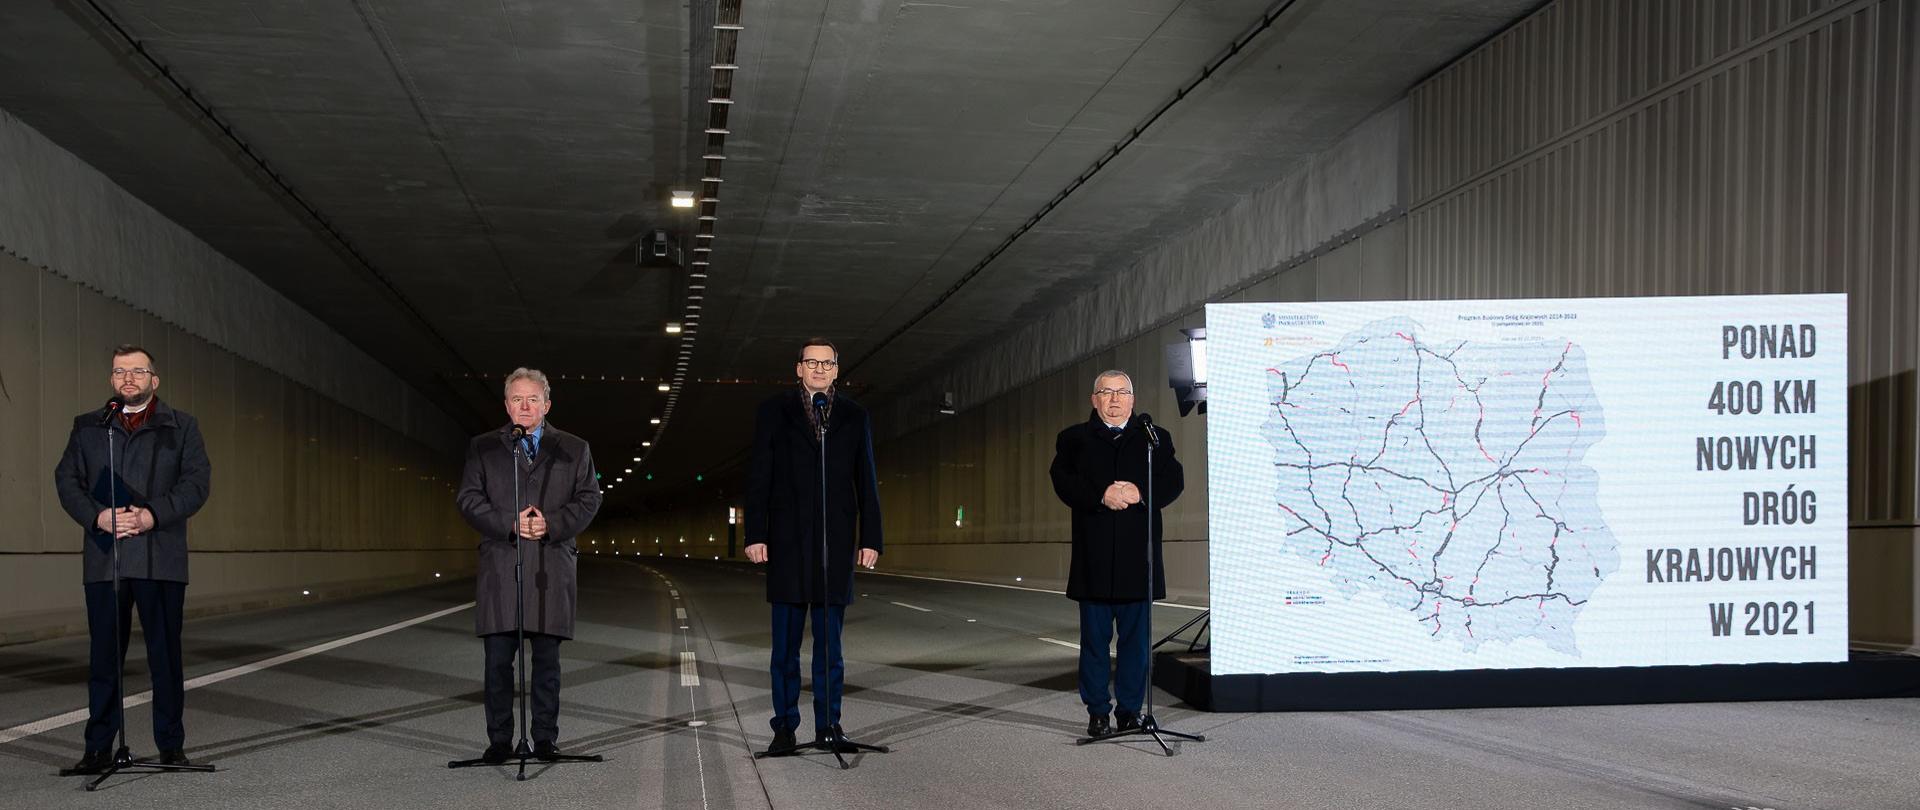 Grzegorz Puda, Janusz Wojciechowski, Mateusz Morawiecki i Andrzej Adamczyk podczas konferencji prasowej podczas otwarcia tunelu. 